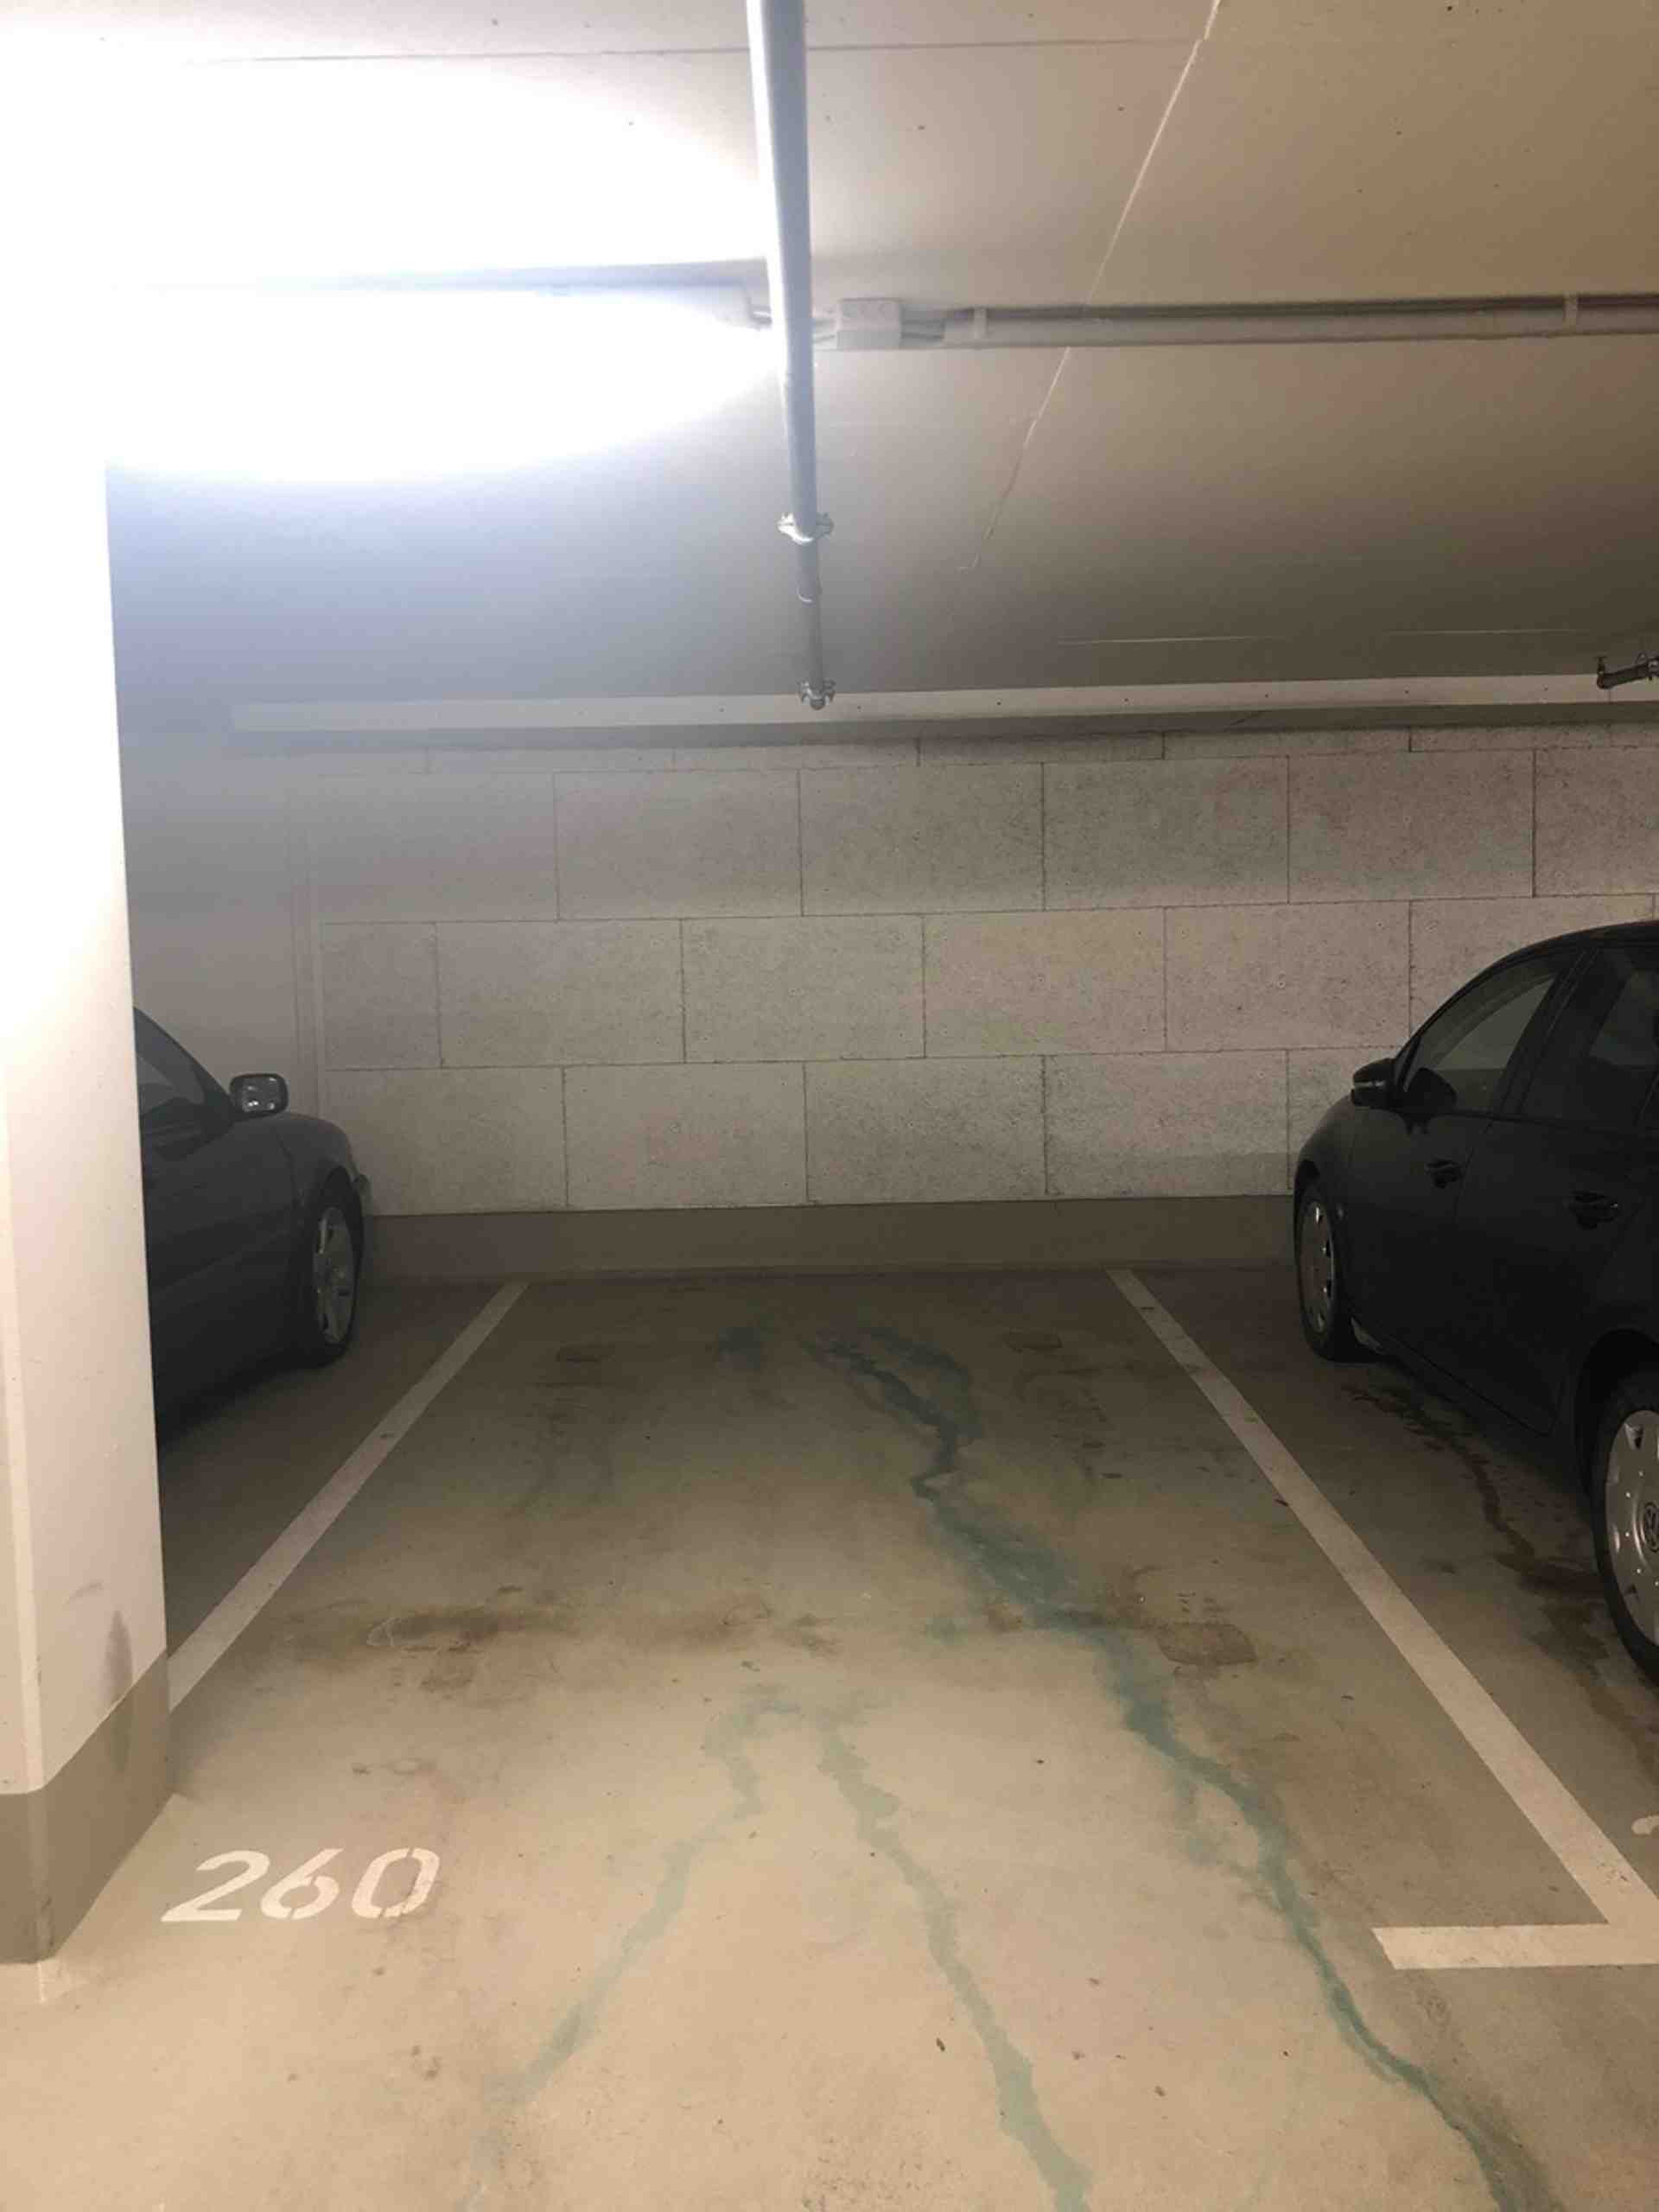 Exclusive undergr. parking spot near Munich central station. - Philipp-Loewenfeld-Straße, 80339 Munich - Photo 2 of 3